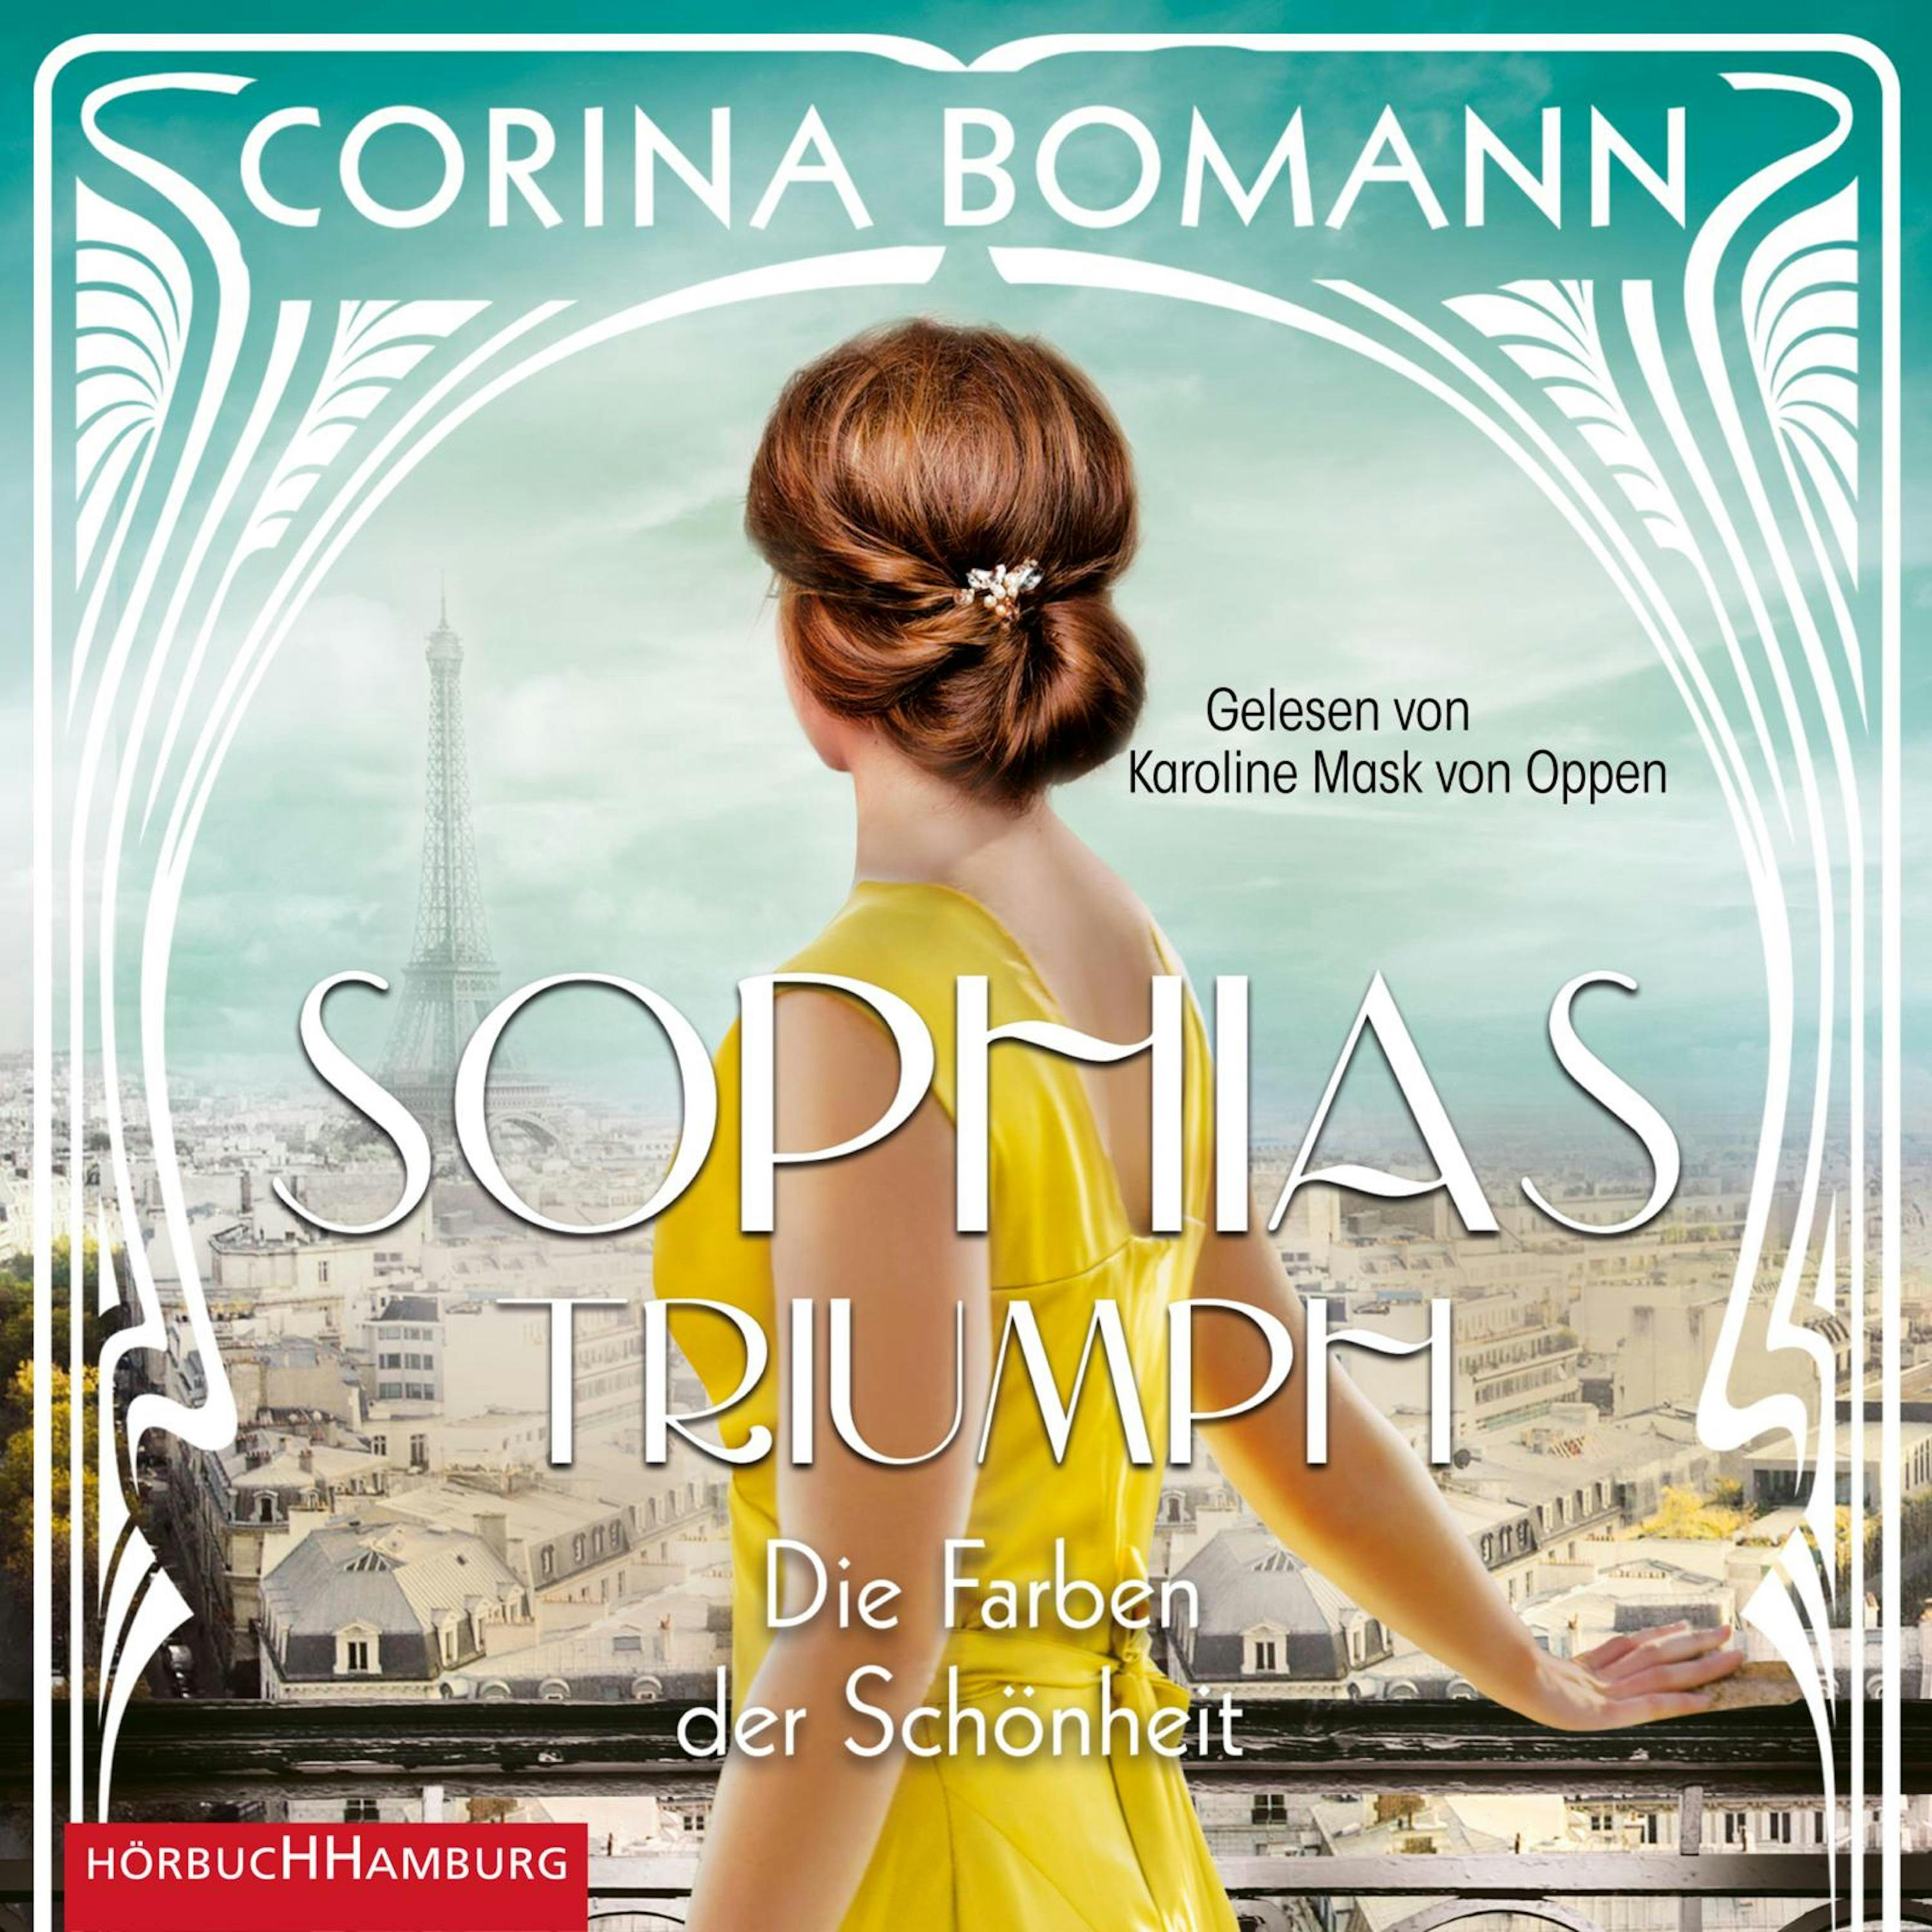 Die Farben der Schönheit – Sophias Triumph (Sophia 3) - undefined